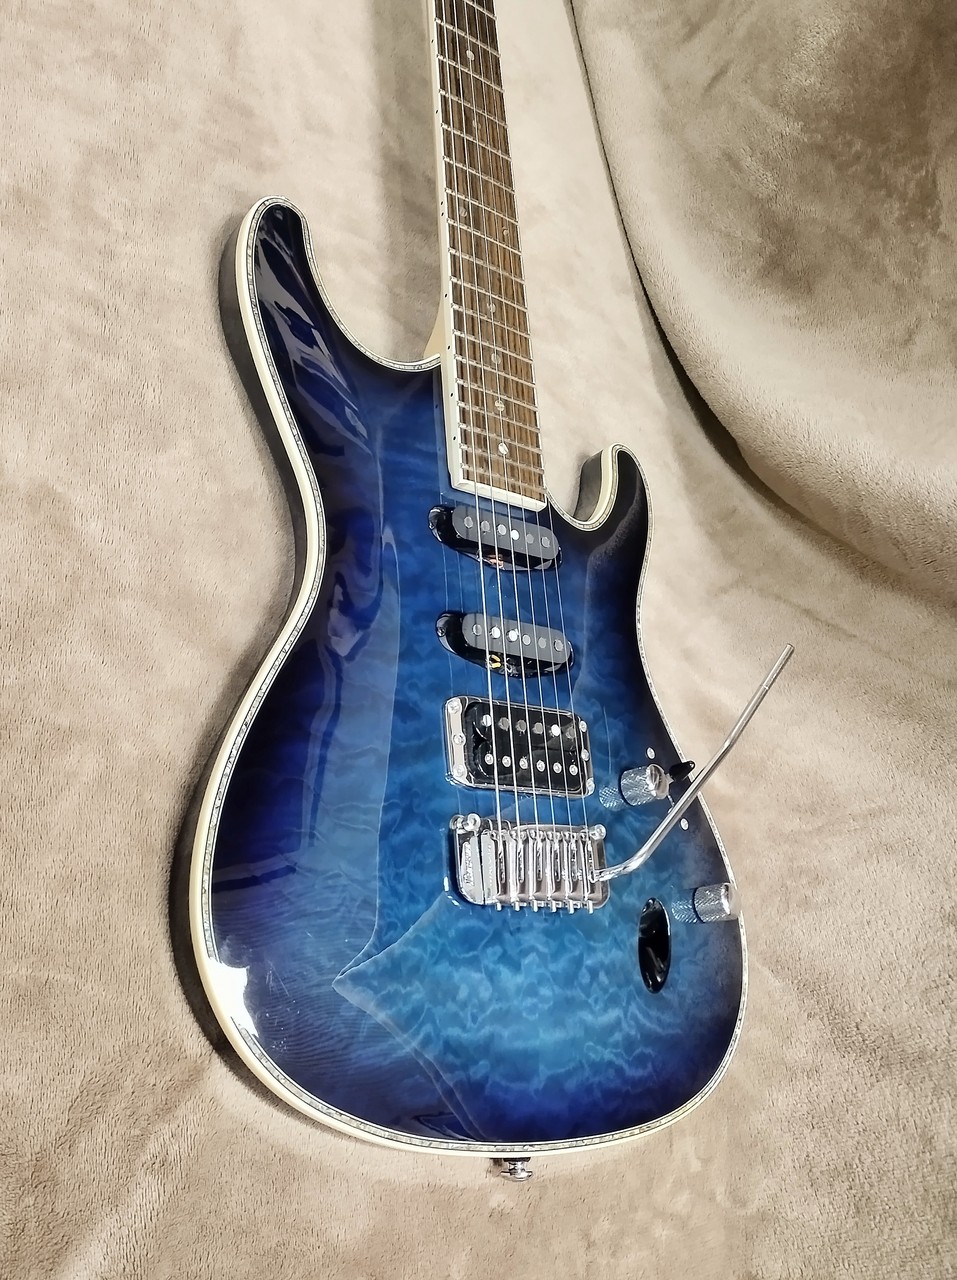 【ベスト】アイバニーズ SA360QM ローランドギターシンセPU GK-2A 13Pケーブル付き アイバニーズ